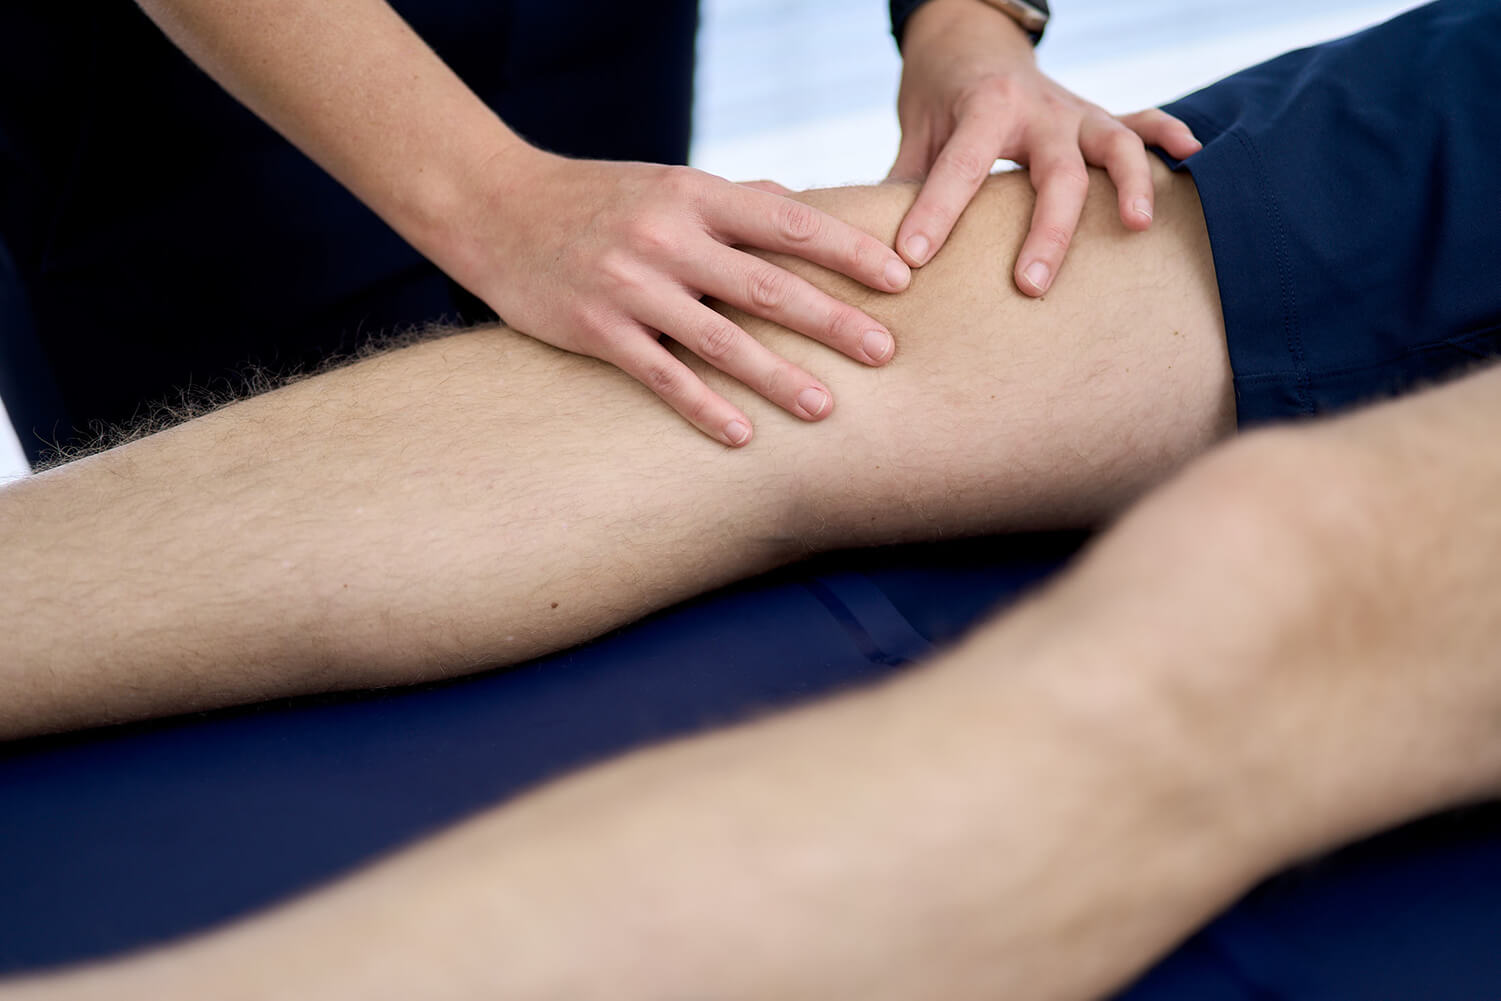 Knee, knee pain